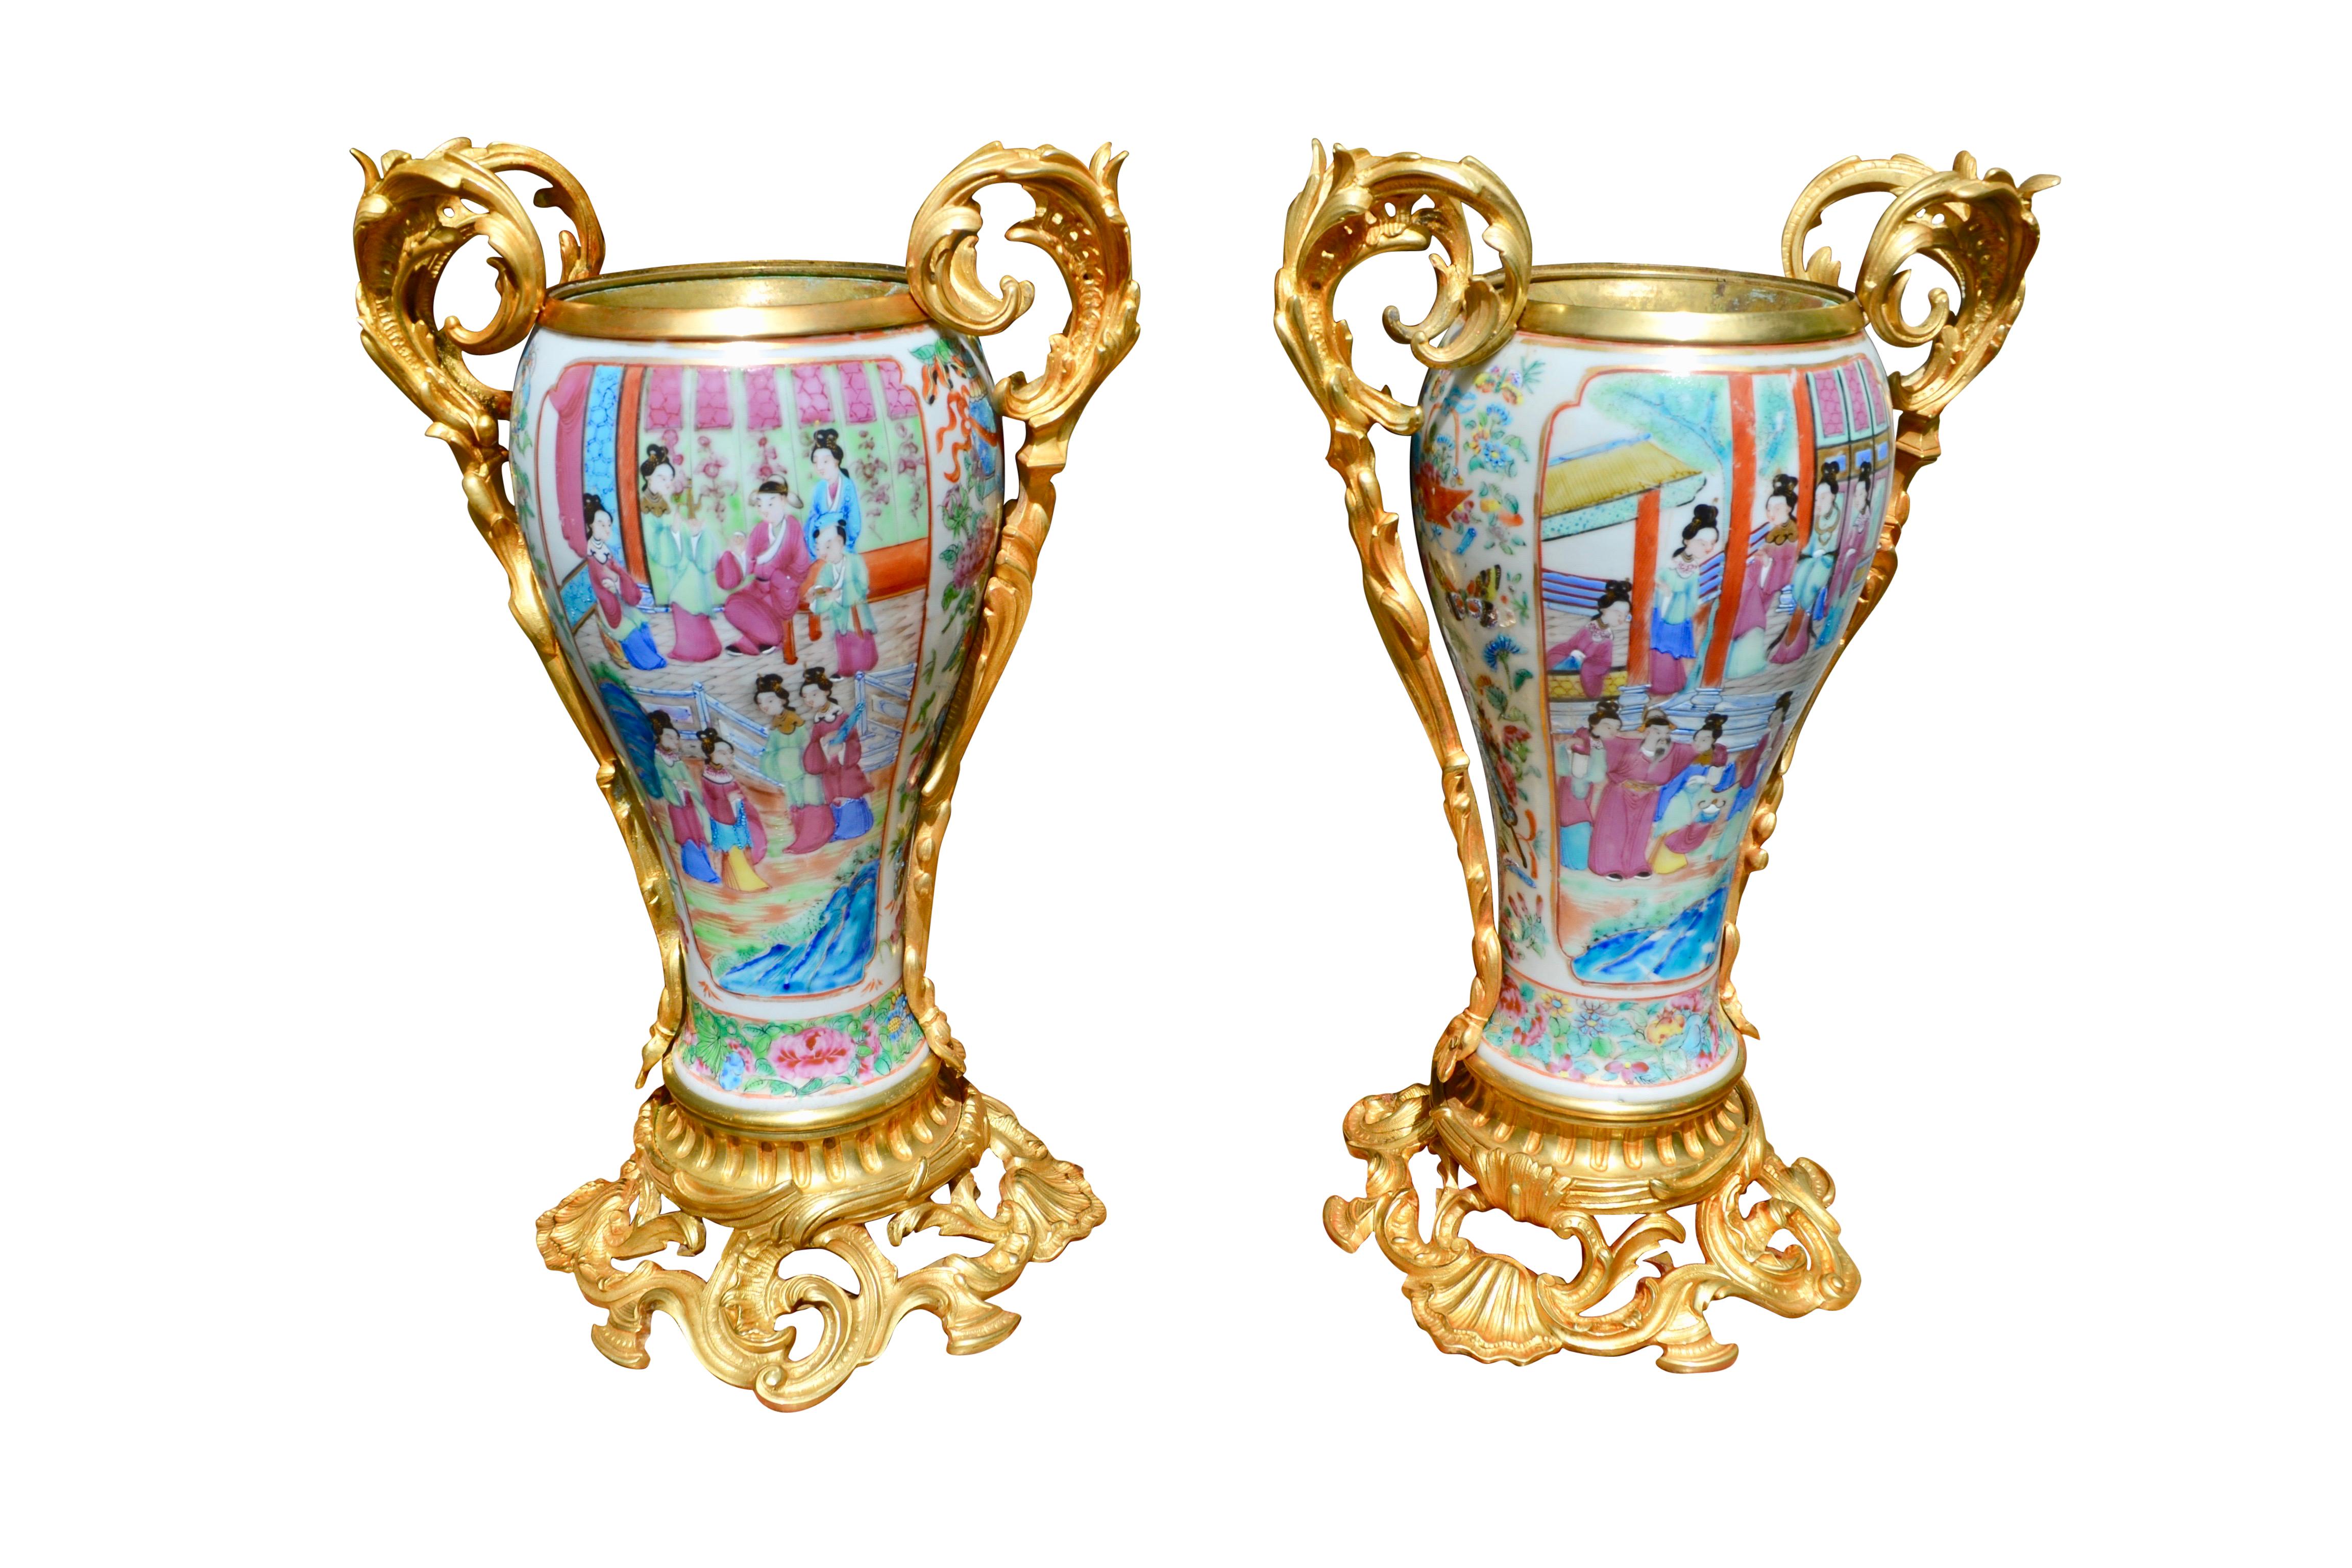 Eine schöne französische und asiatische Zusammenarbeit von einem Paar Napoleon III Famille Rose Porzellan (aus Kanton China) und vergoldeten Bronze- und Messing-Öllampen aus dem 19. Jahrhundert, die auf wundersame Weise die ursprünglichen